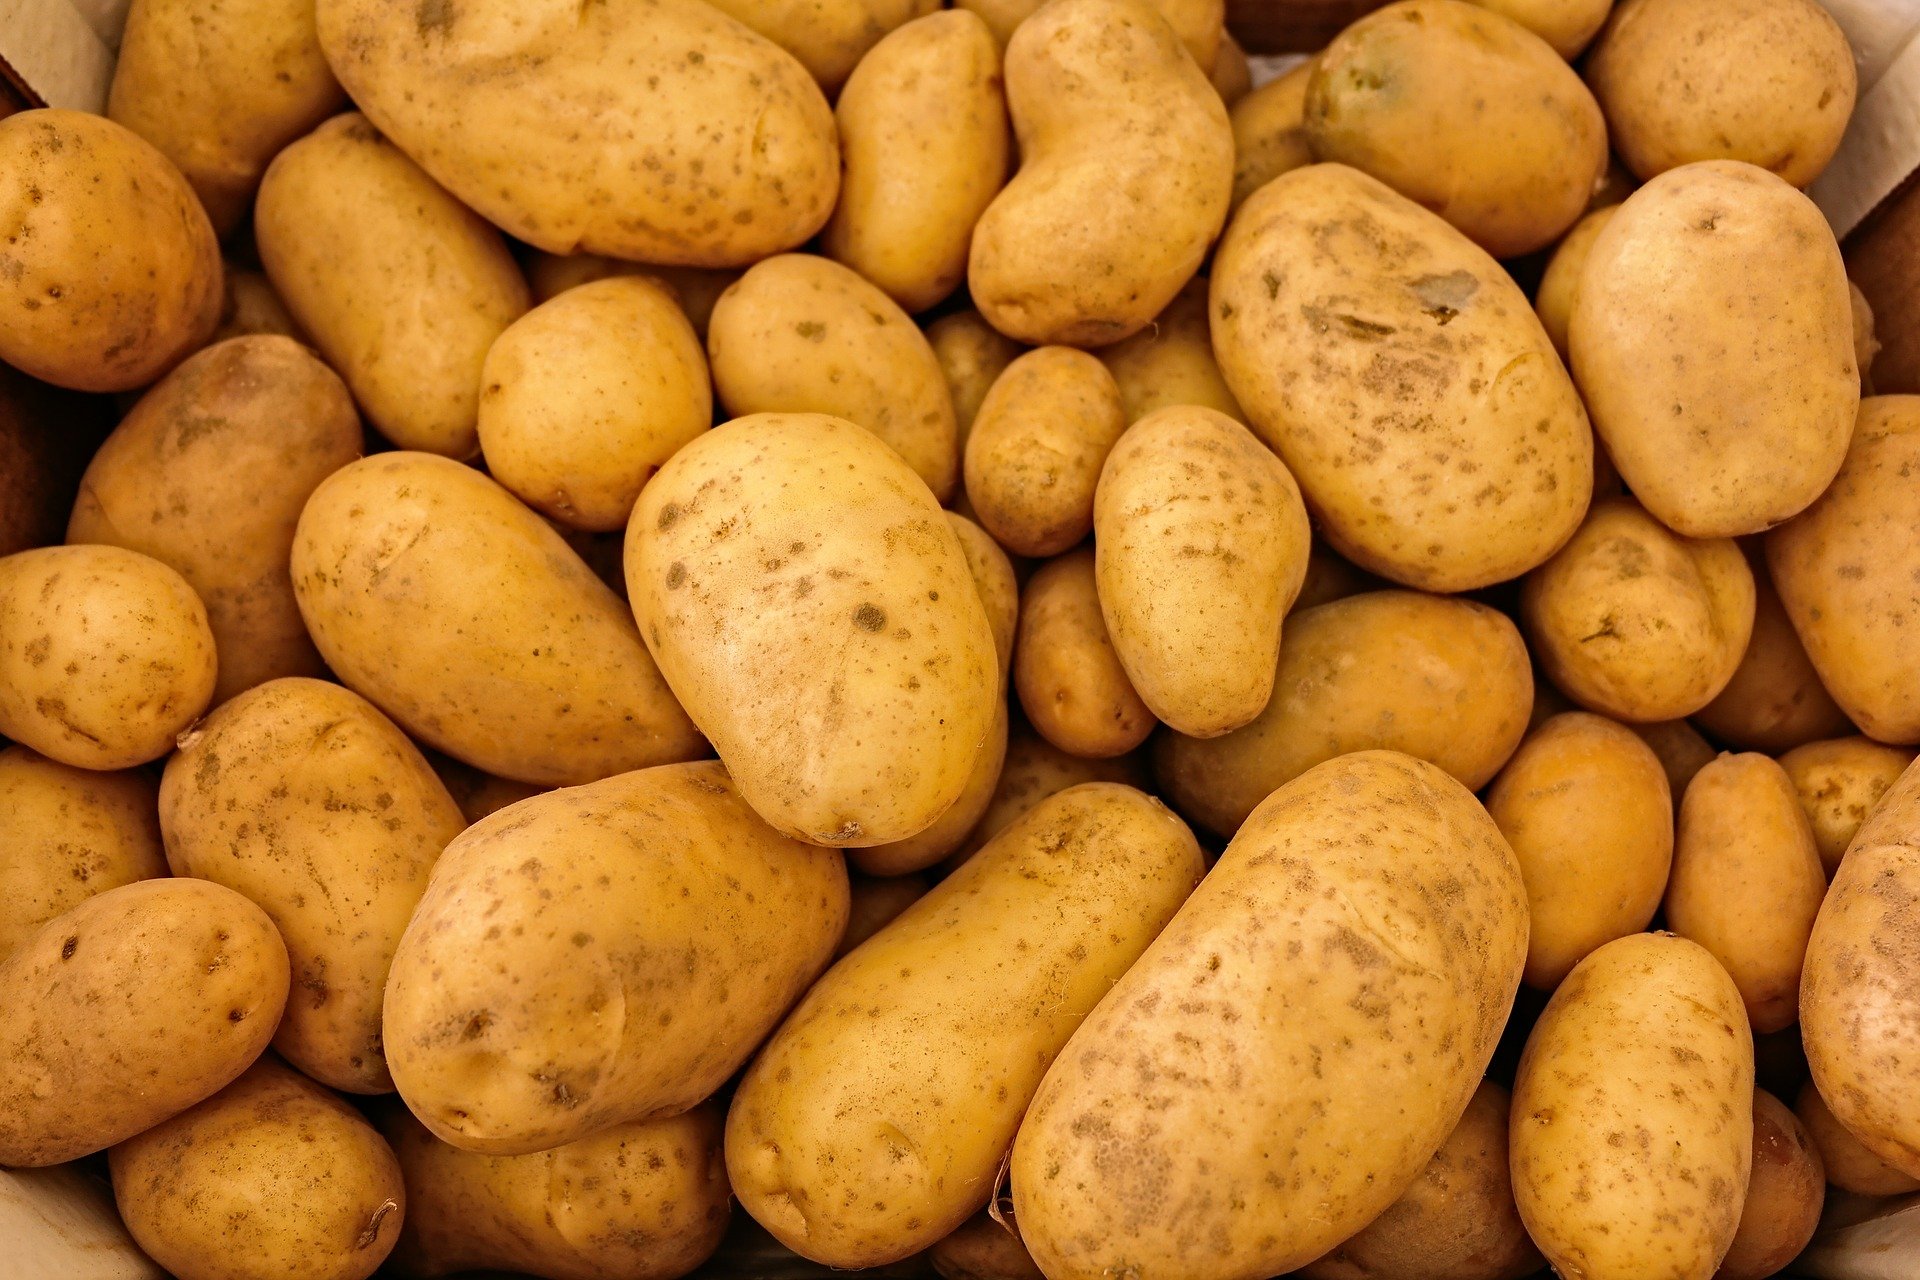 

Более 3 тыс тонн картофеля экспортировали из Удмуртии с начала года

